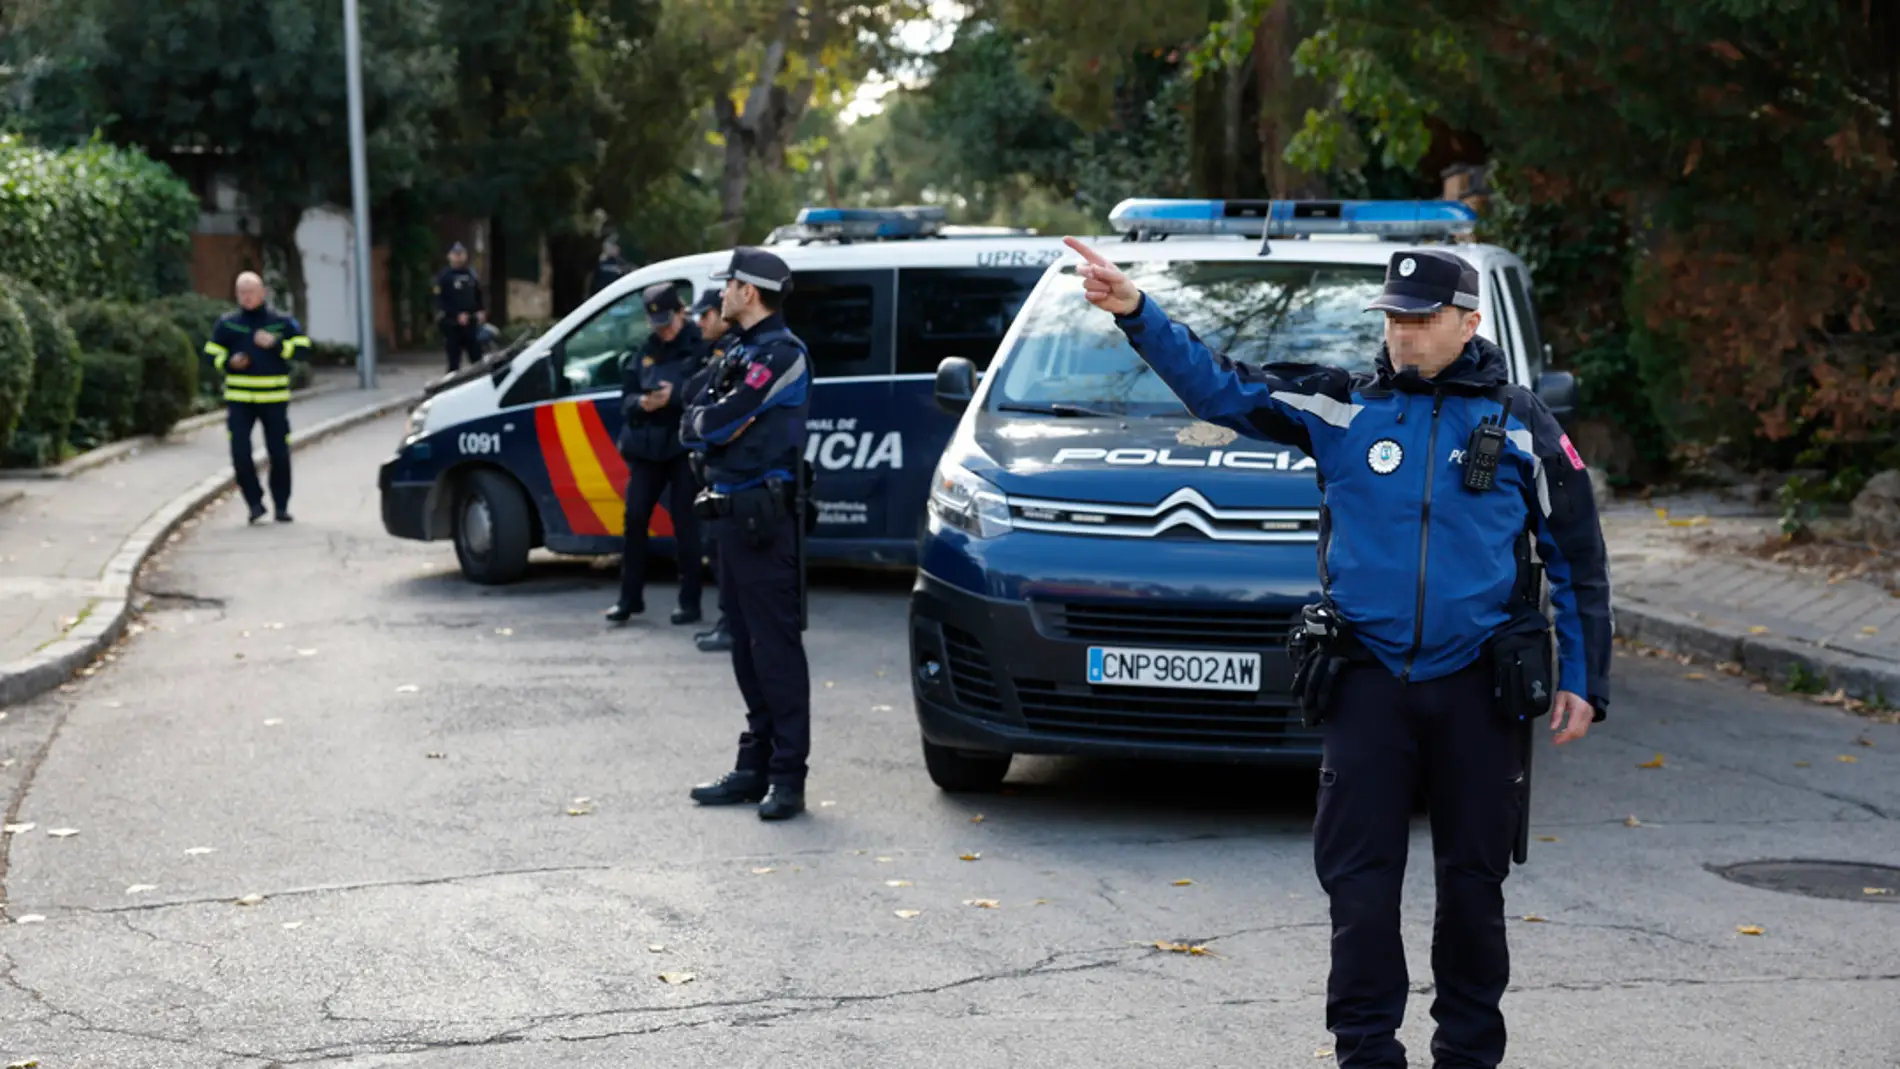 un herido por un sobre bomba en la embajada de ucrania en madrid laverdaddemonagas.com que llego embajada ucrania contenia explosivo casero 98